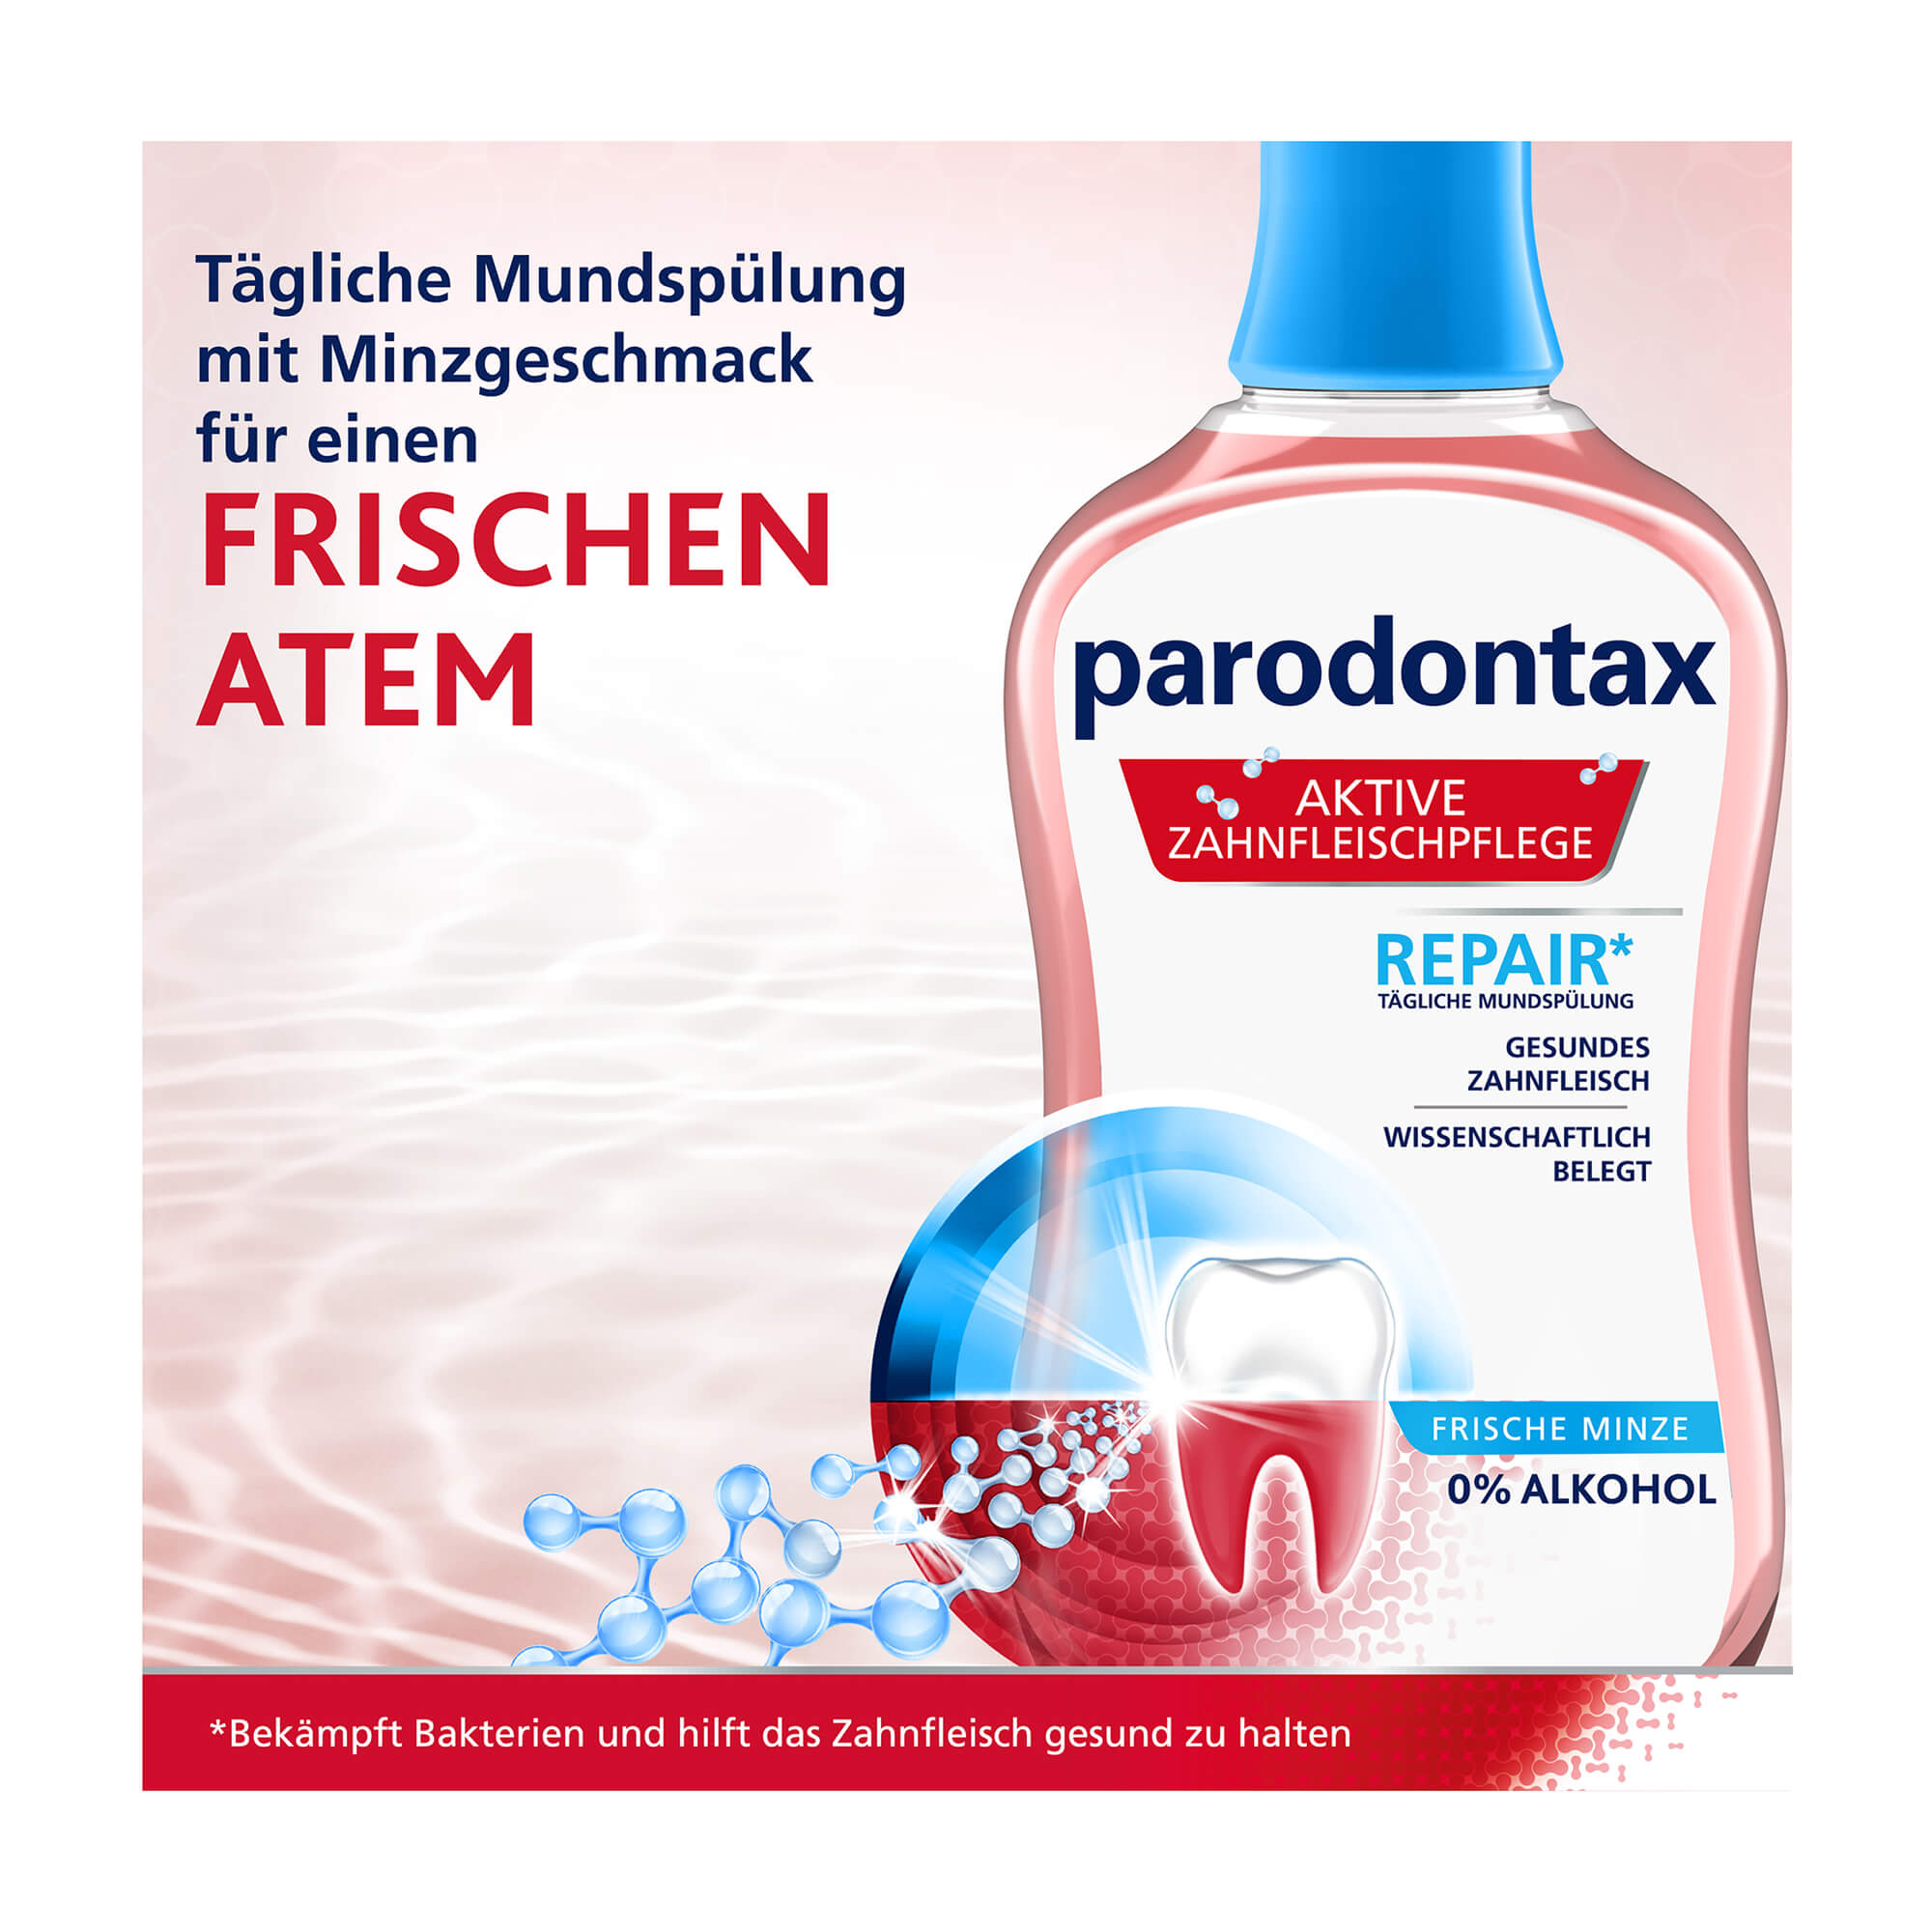 Grafik Parodontax Aktive Zahnfleischpflege-Repair* Tägliche Mundspülung mit Minzgeschmack